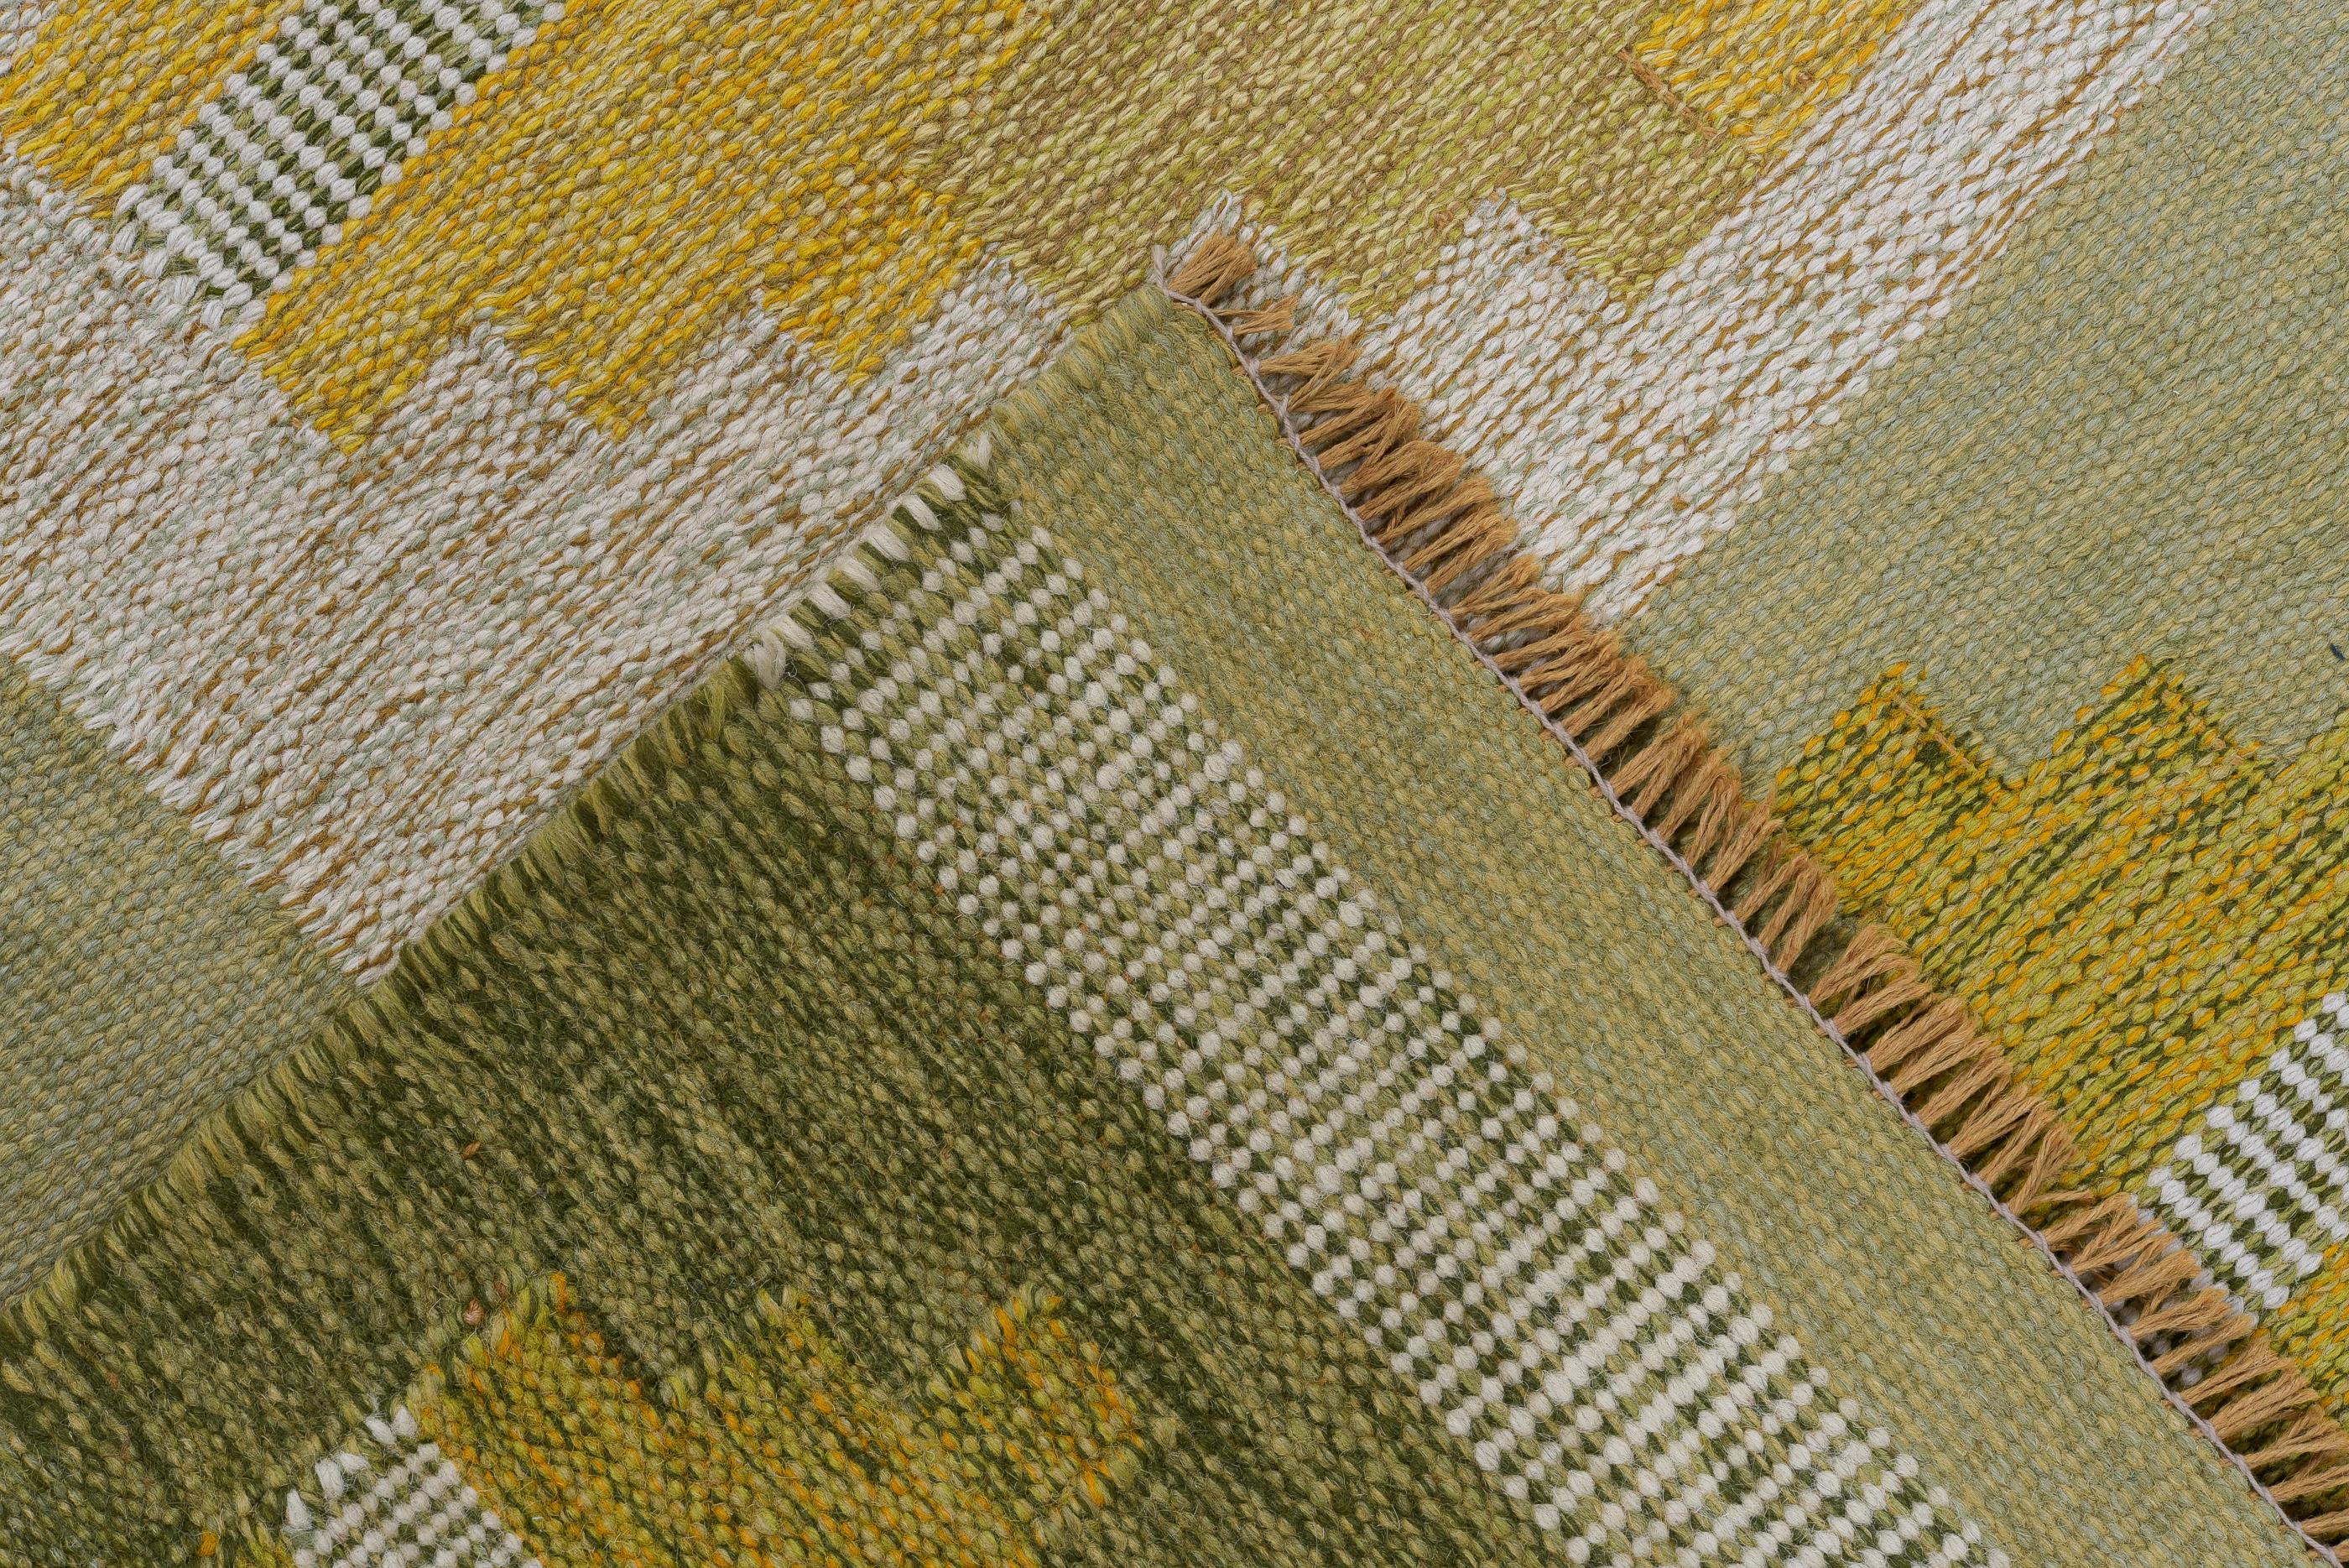  Rollakan-Teppiche sind eine Art traditioneller schwedischer Flachgewebe-Teppiche. Der Name 